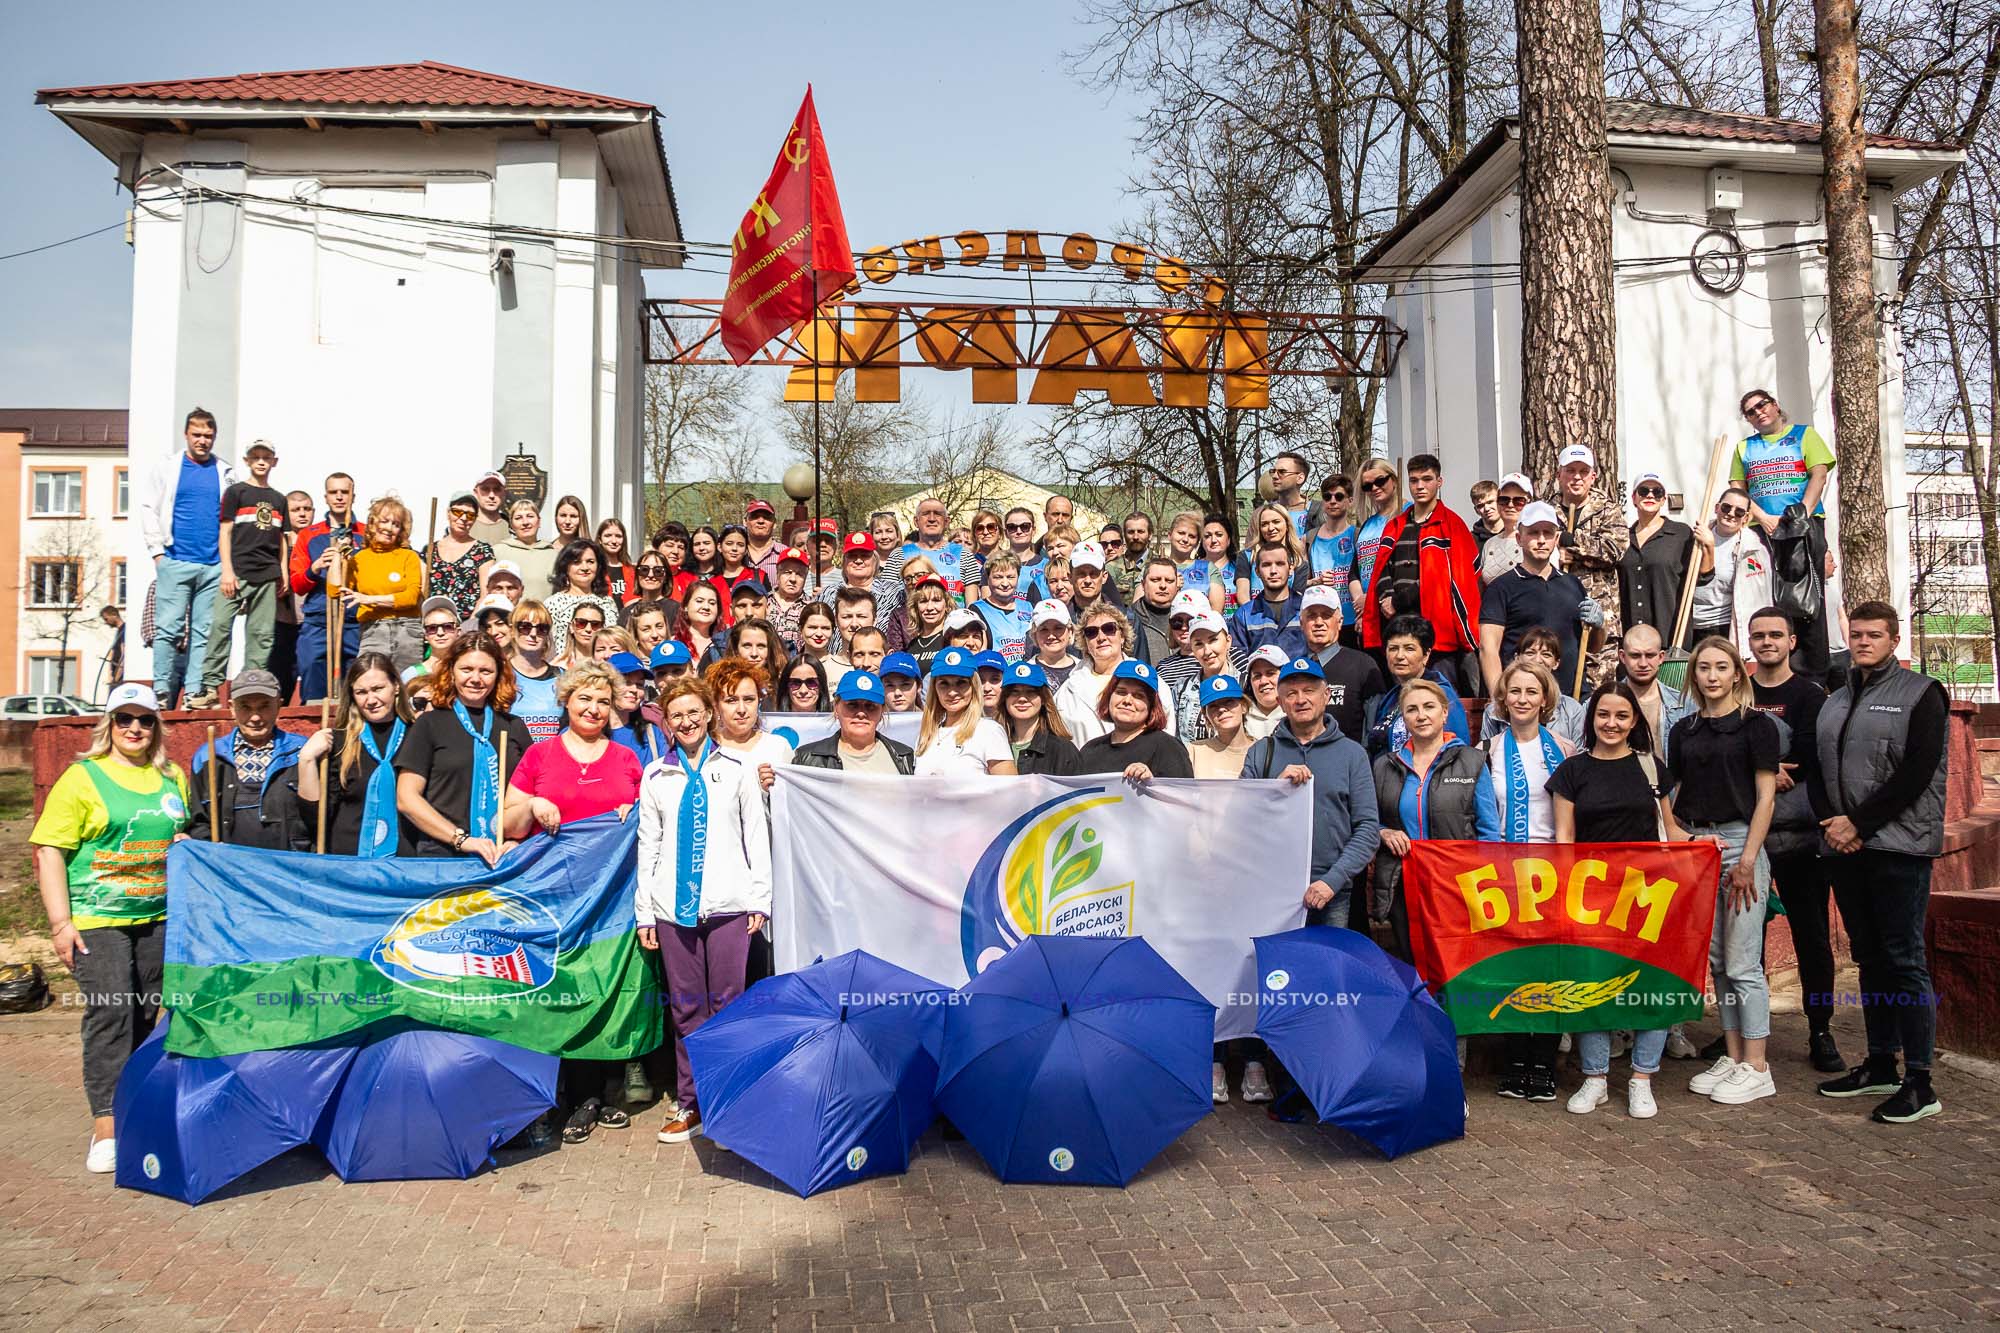 Общественный трудовой десант в парке: в Борисове прошла акция «Вместе за чистый город»